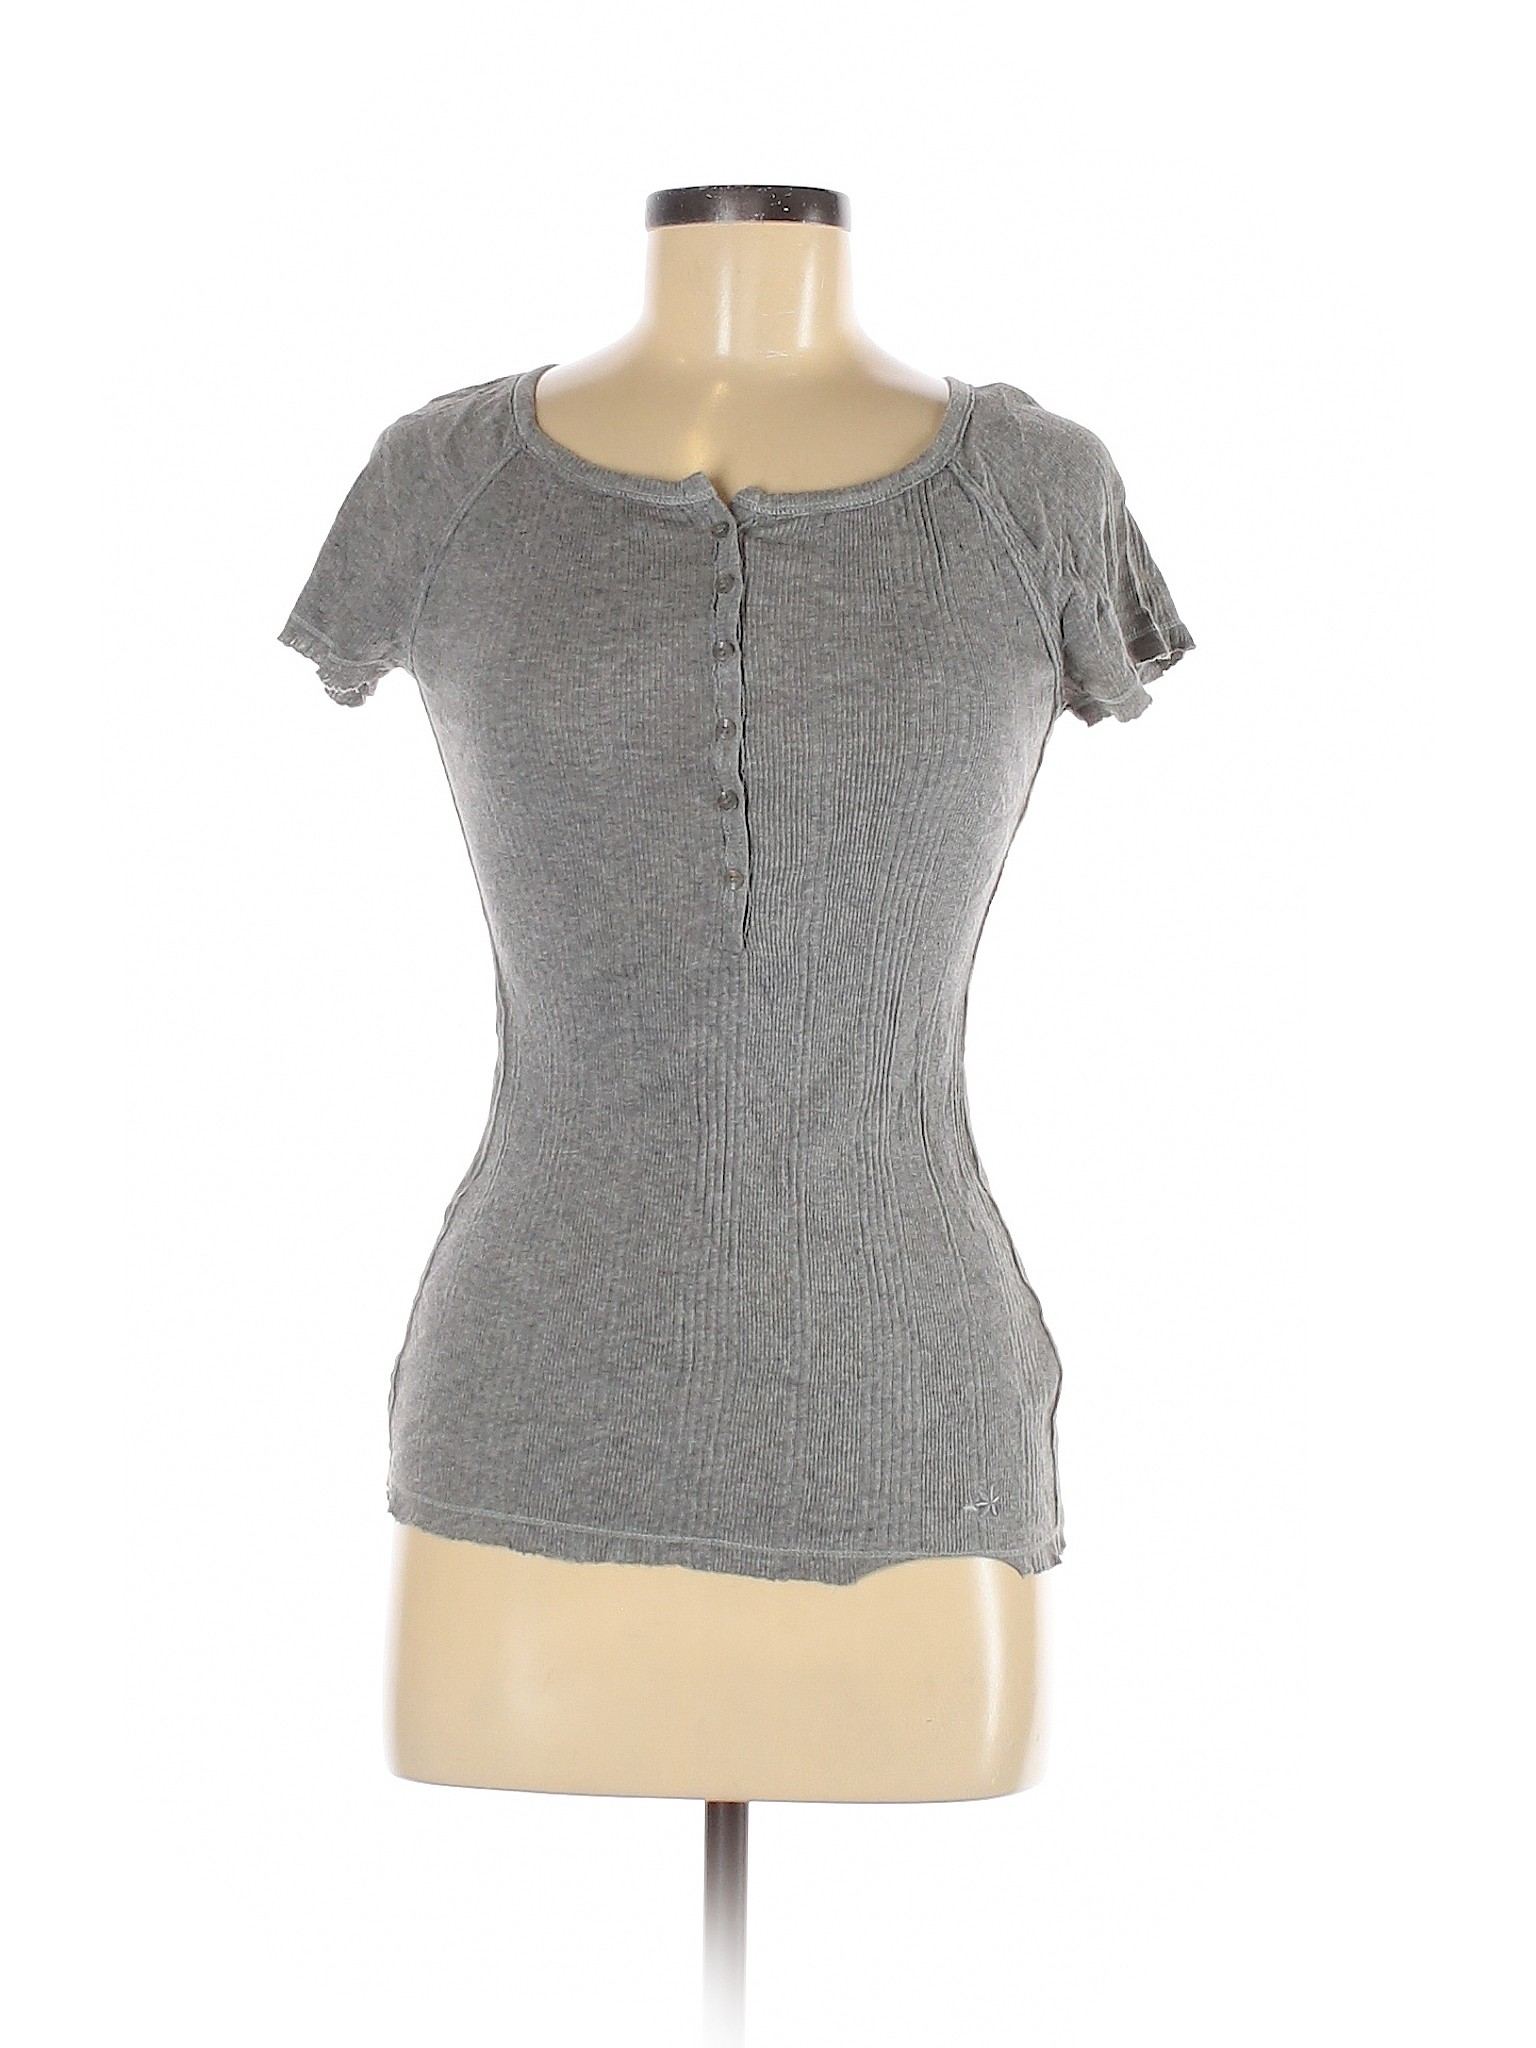 So Wear It Declare it Women Gray Short Sleeve Henley M | eBay